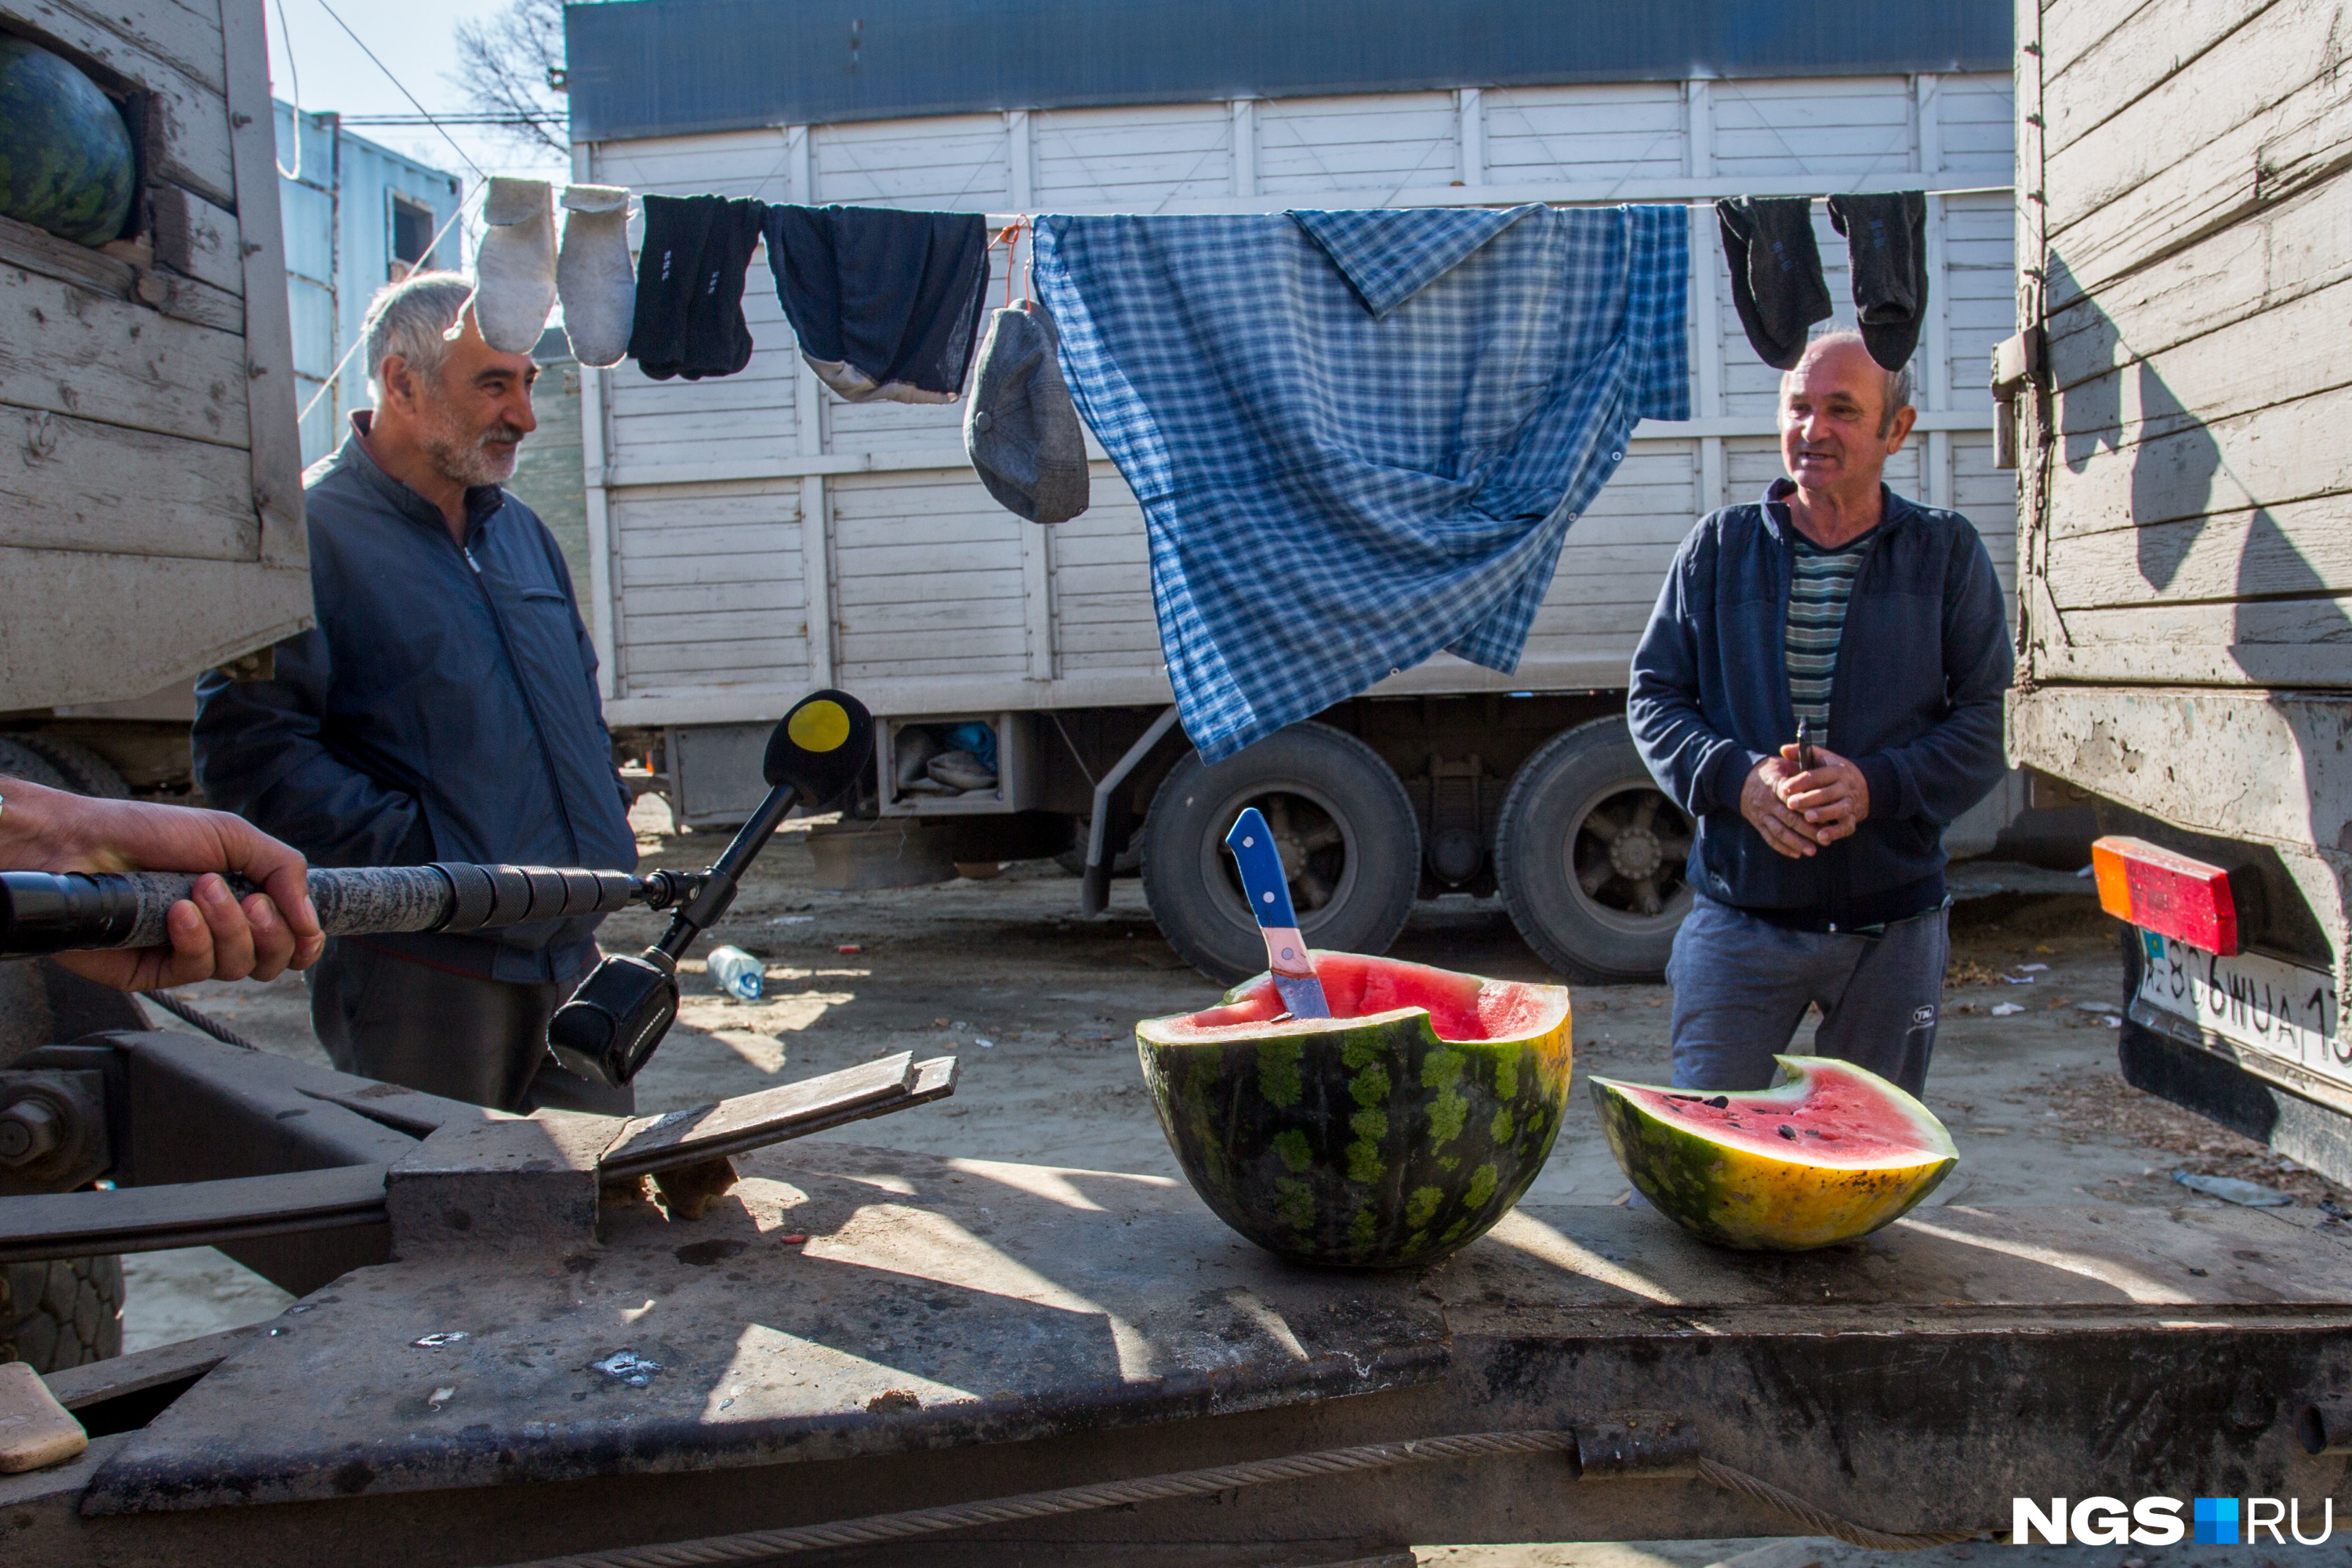 Жизнь на месте вооружённого конфликта идет как обычно: водители фур едят арбузы и сушат бельё